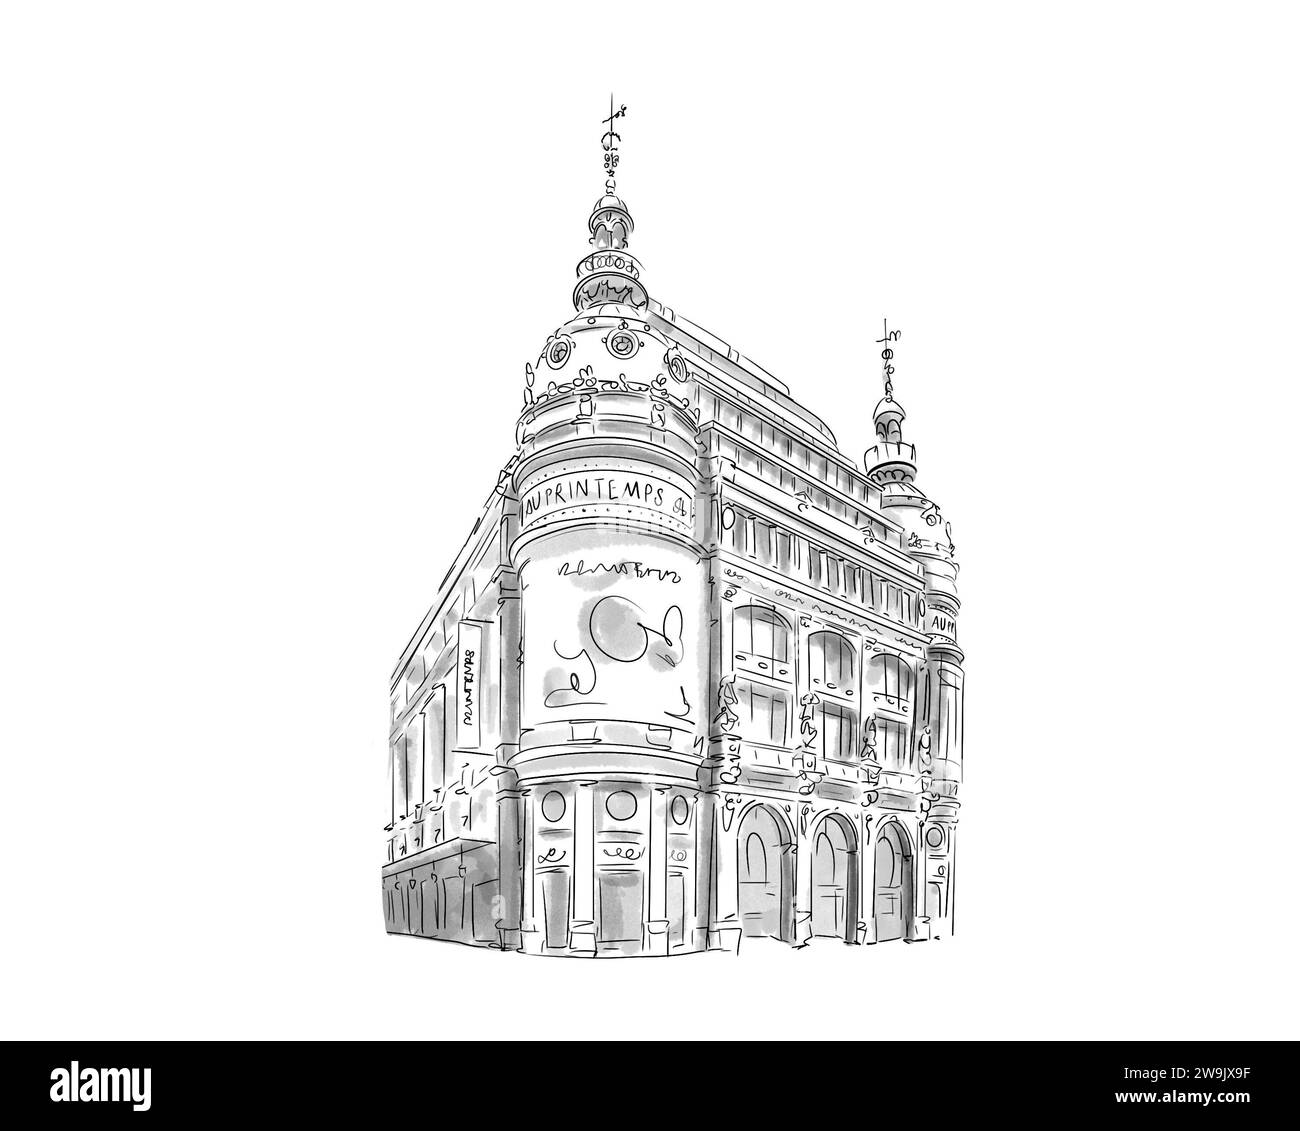 Illustration en noir et blanc de monument de Paris, Au printemps Stock Photo